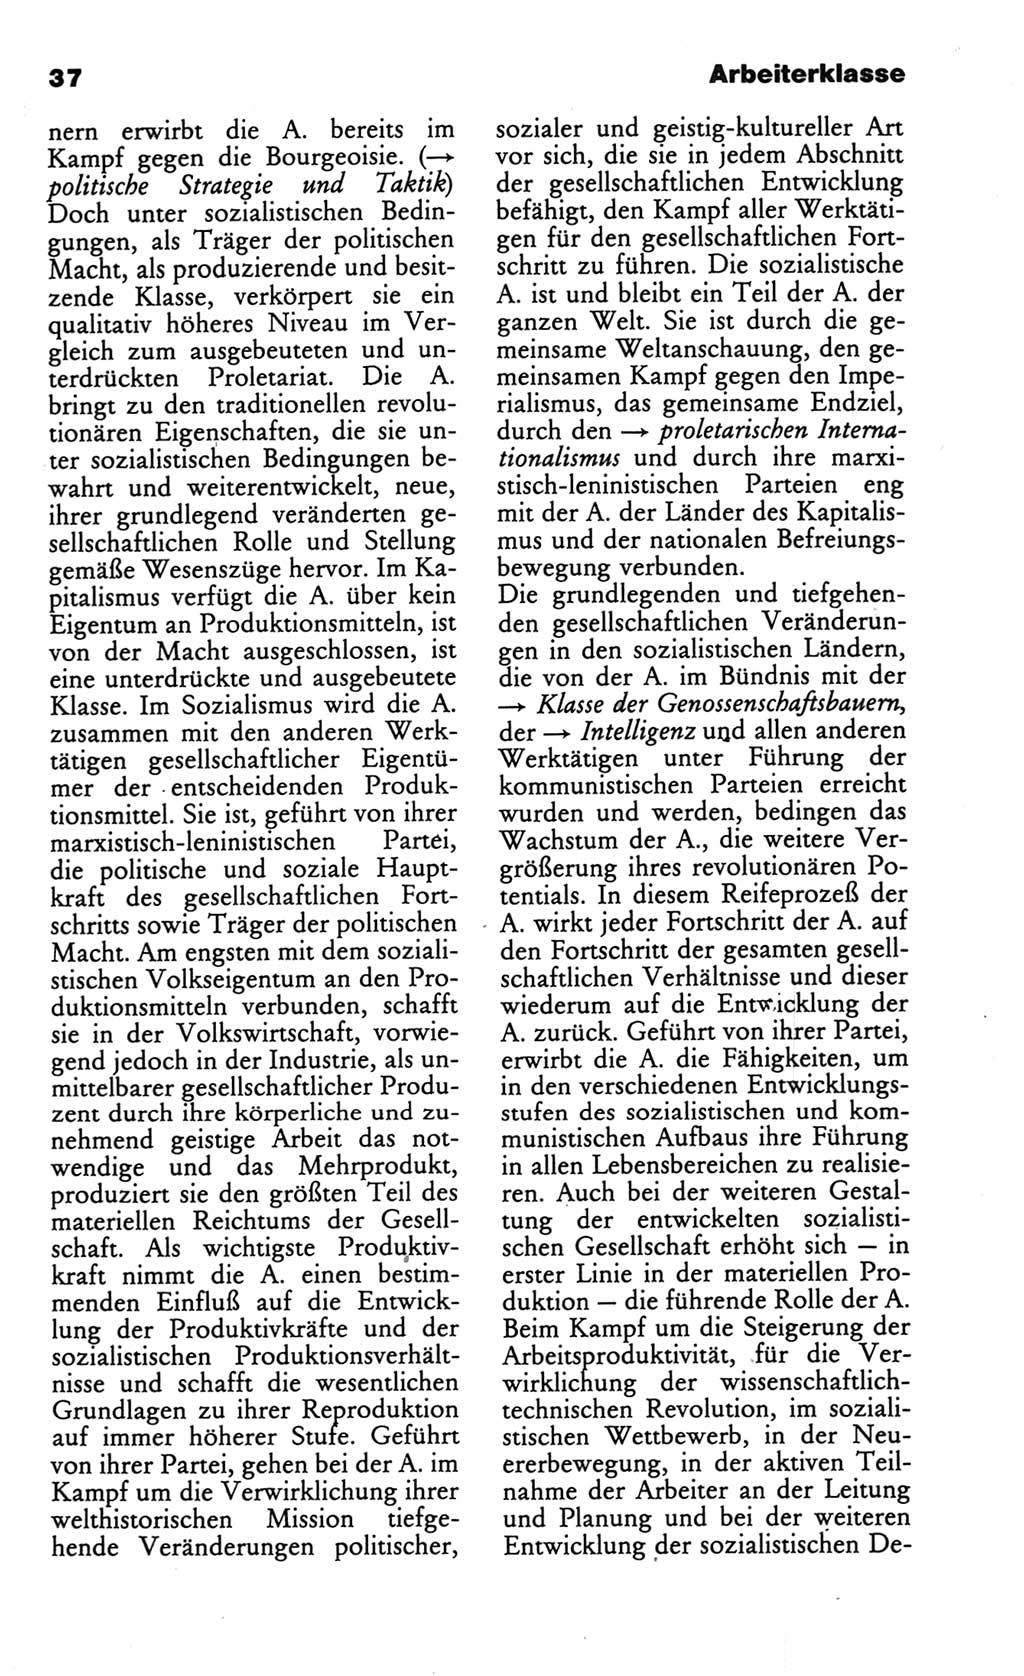 Wörterbuch des wissenschaftlichen Kommunismus [Deutsche Demokratische Republik (DDR)] 1986, Seite 37 (Wb. wiss. Komm. DDR 1986, S. 37)